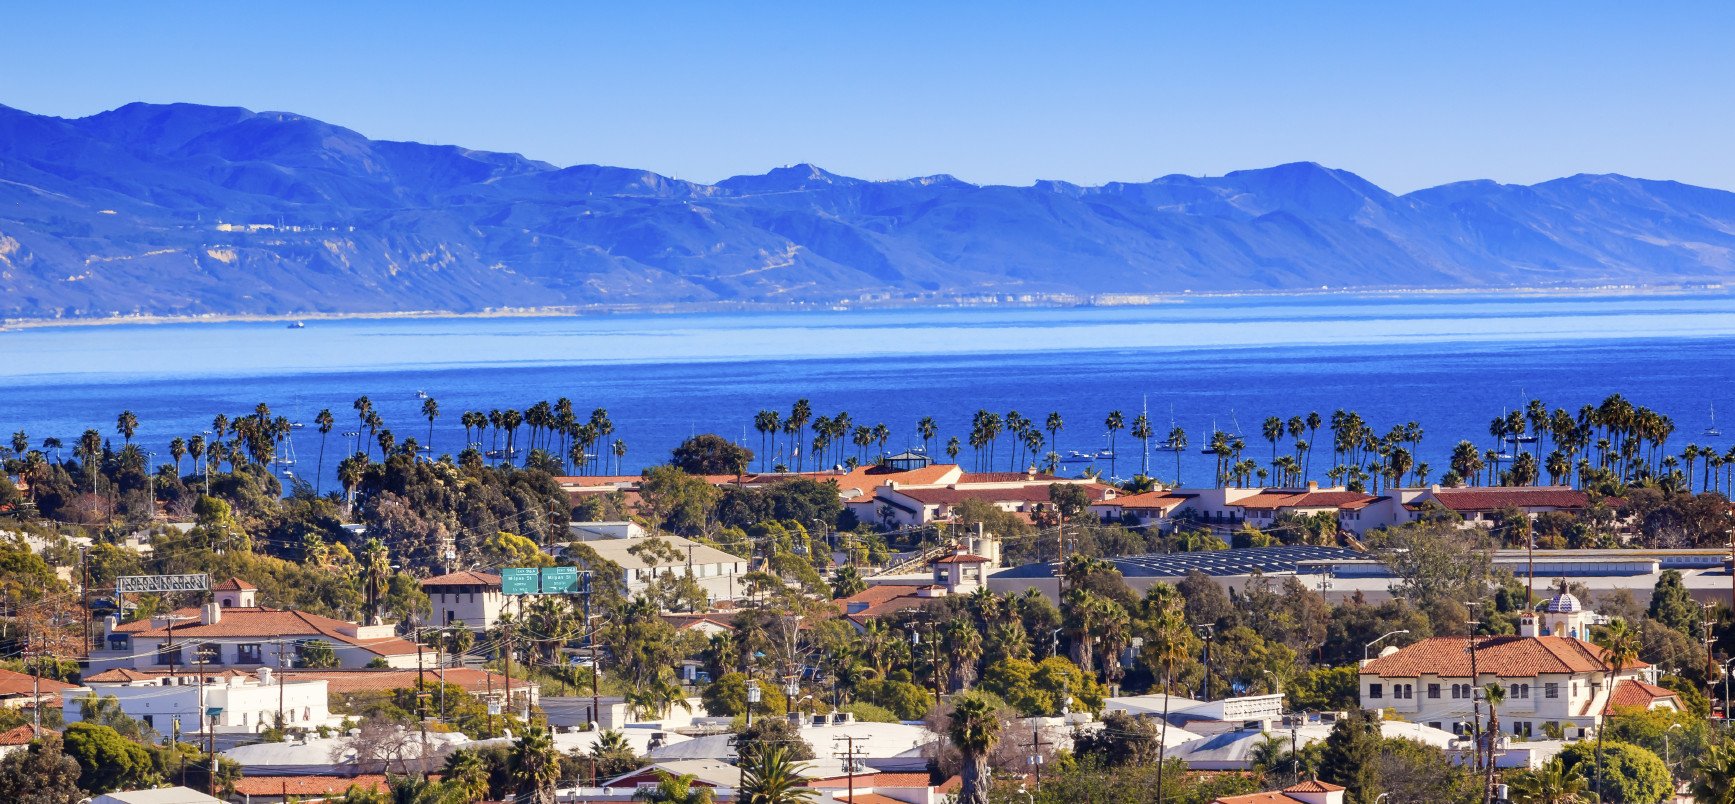 Santa Barbara County cover image